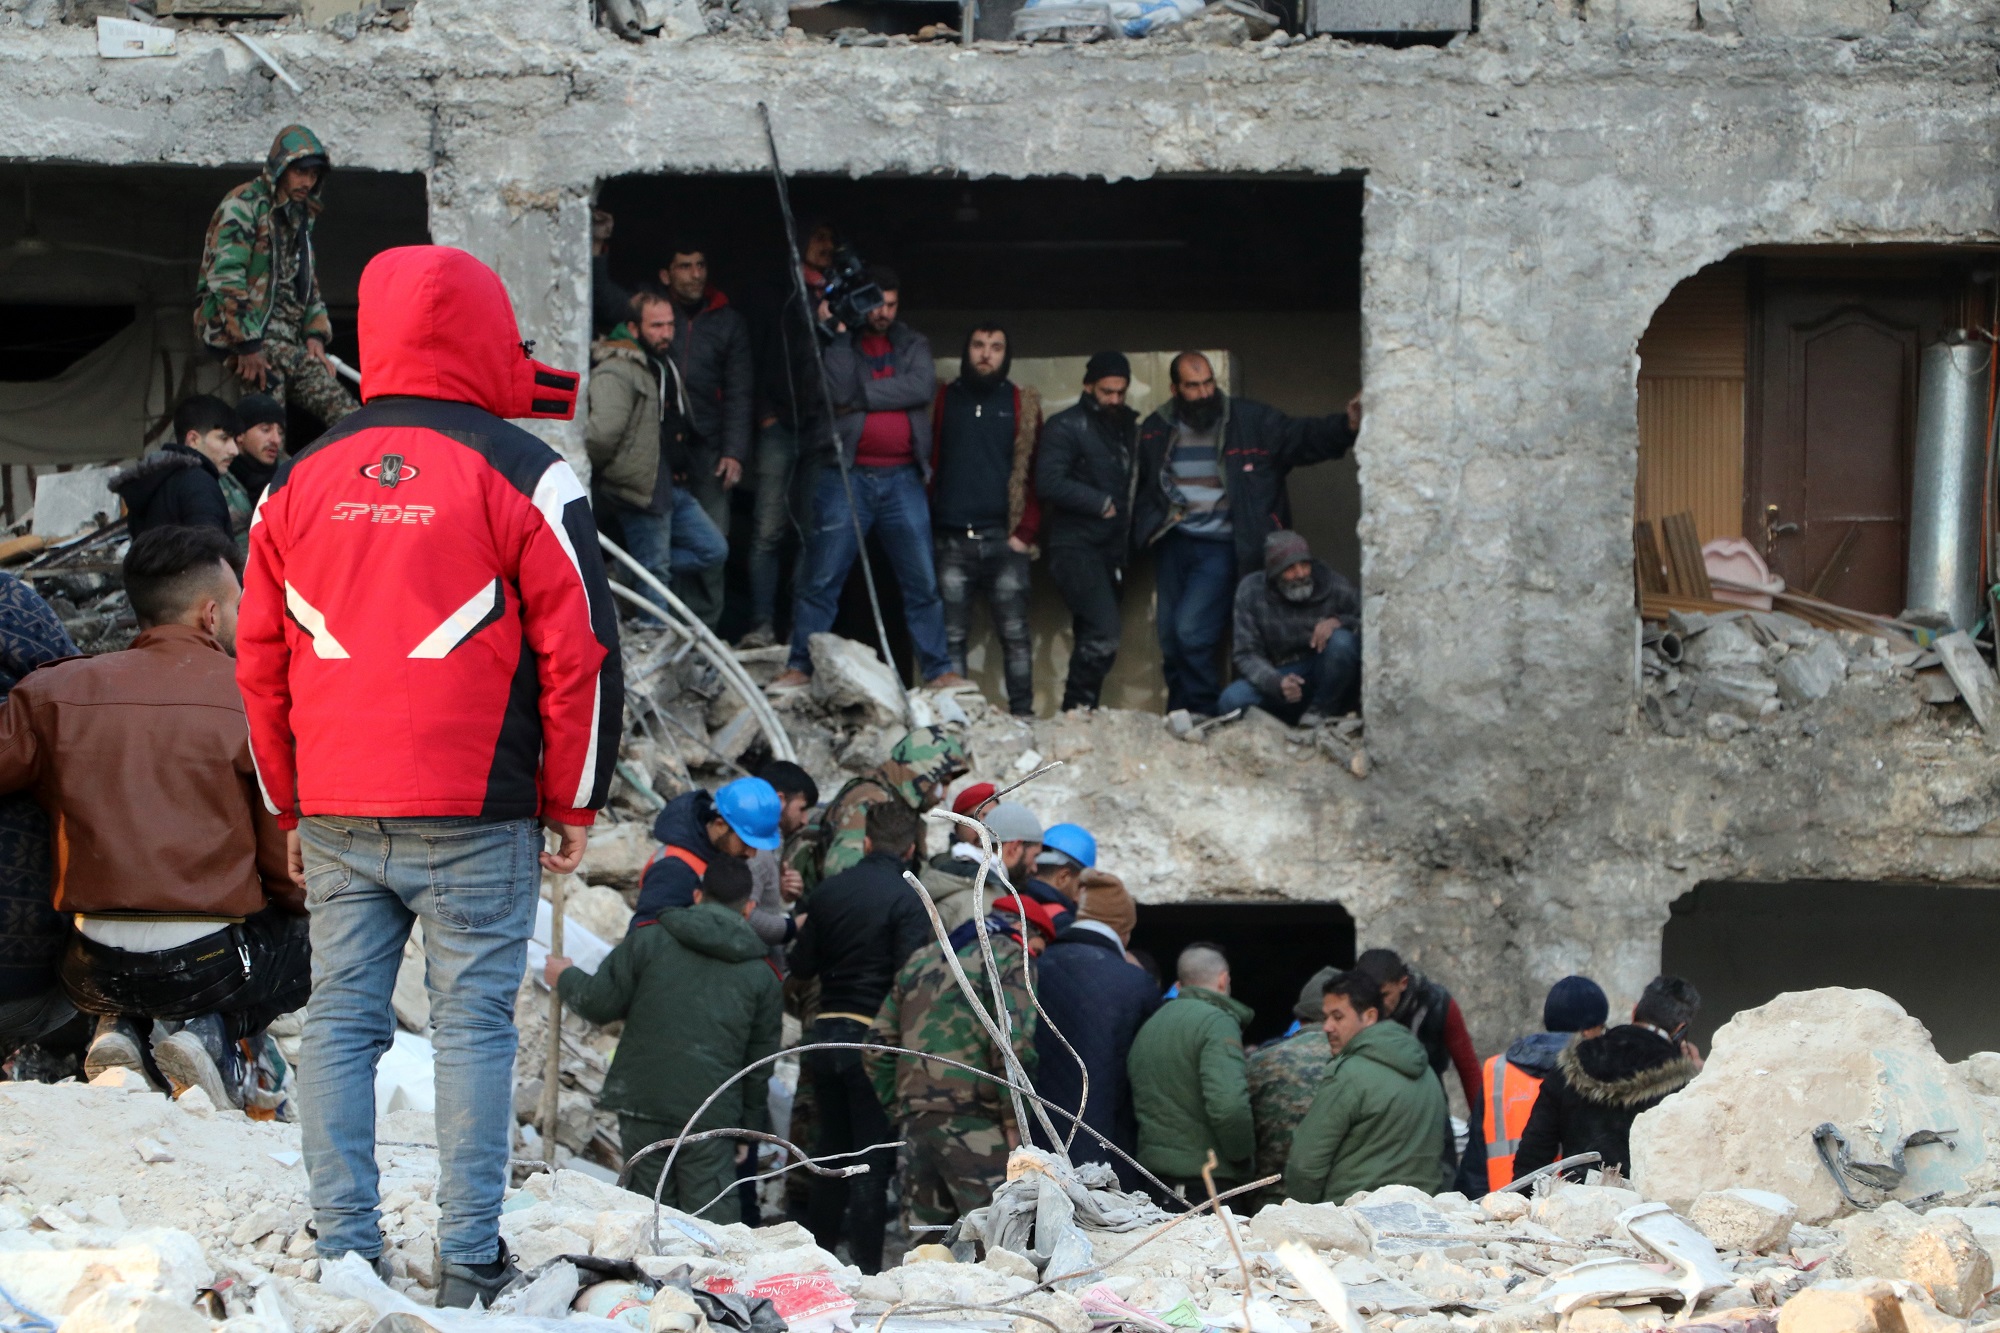 Ο Σύρος Νάντερ Χαλμπούνι στην ΕΡΤ: «Ακούμε τις φωνές από τα παιδιά κάτω από τα ερείπια και δεν μπορούμε να κάνουμε τίποτε»